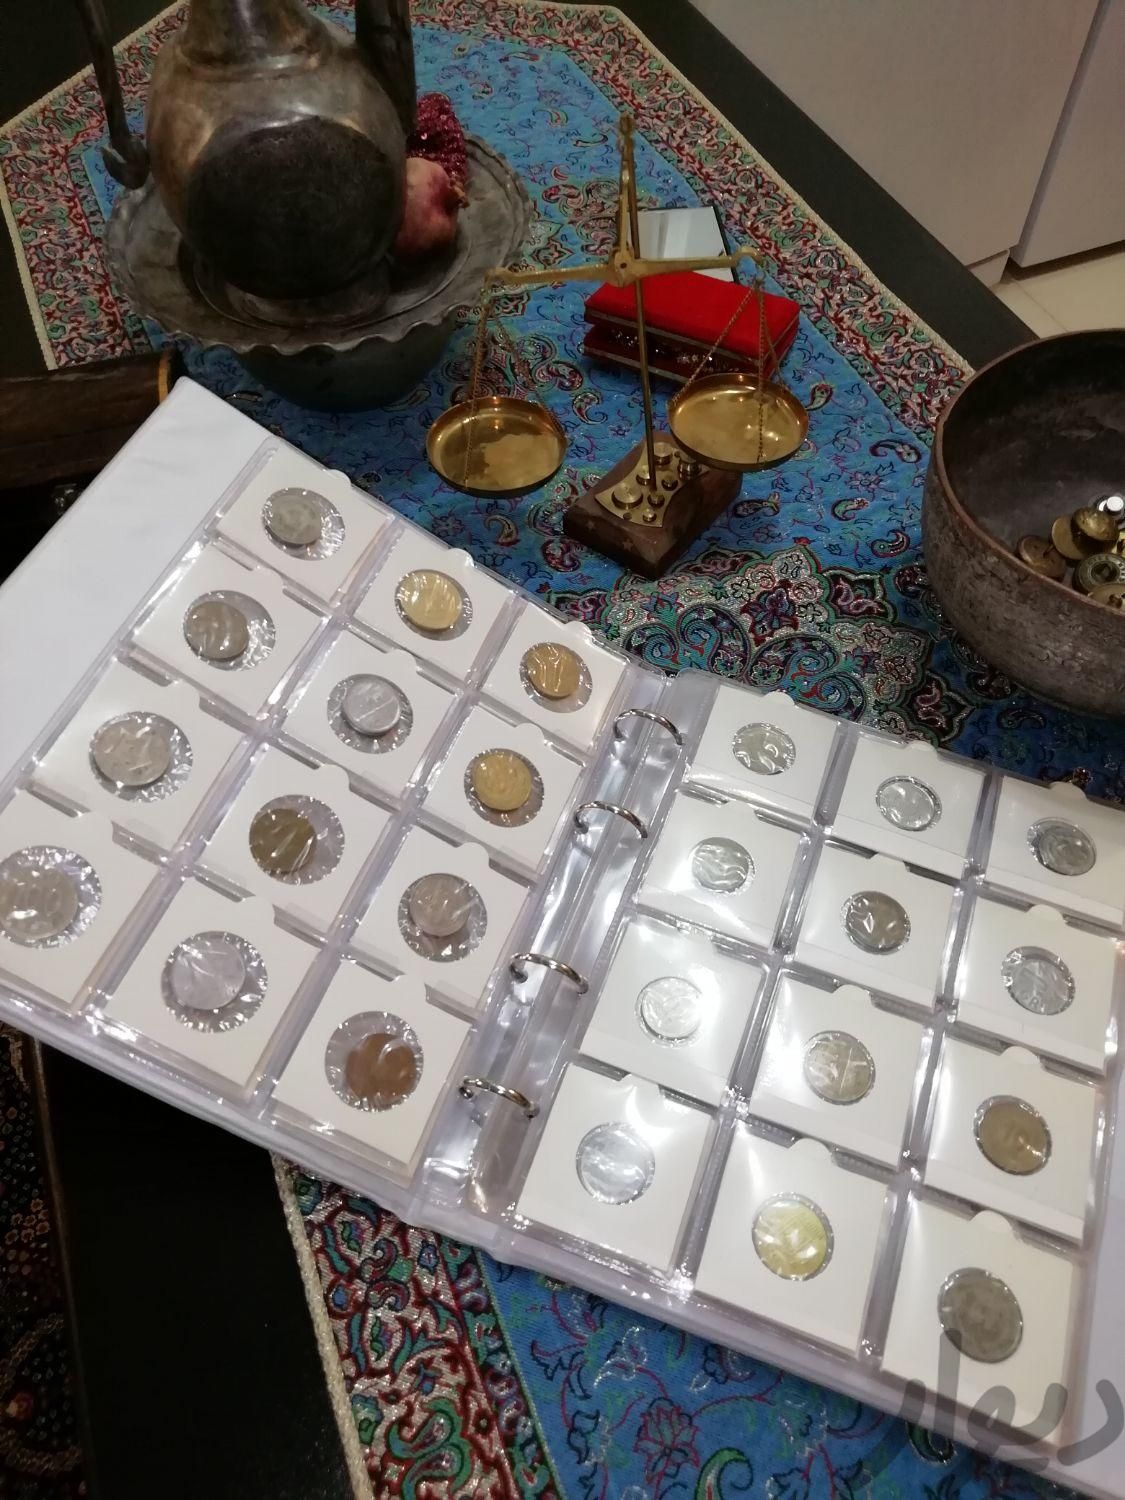 صد سکه بدون تکرار قدیمی خارجی|سکه، تمبر و اسکناس|شهرکرد, |دیوار